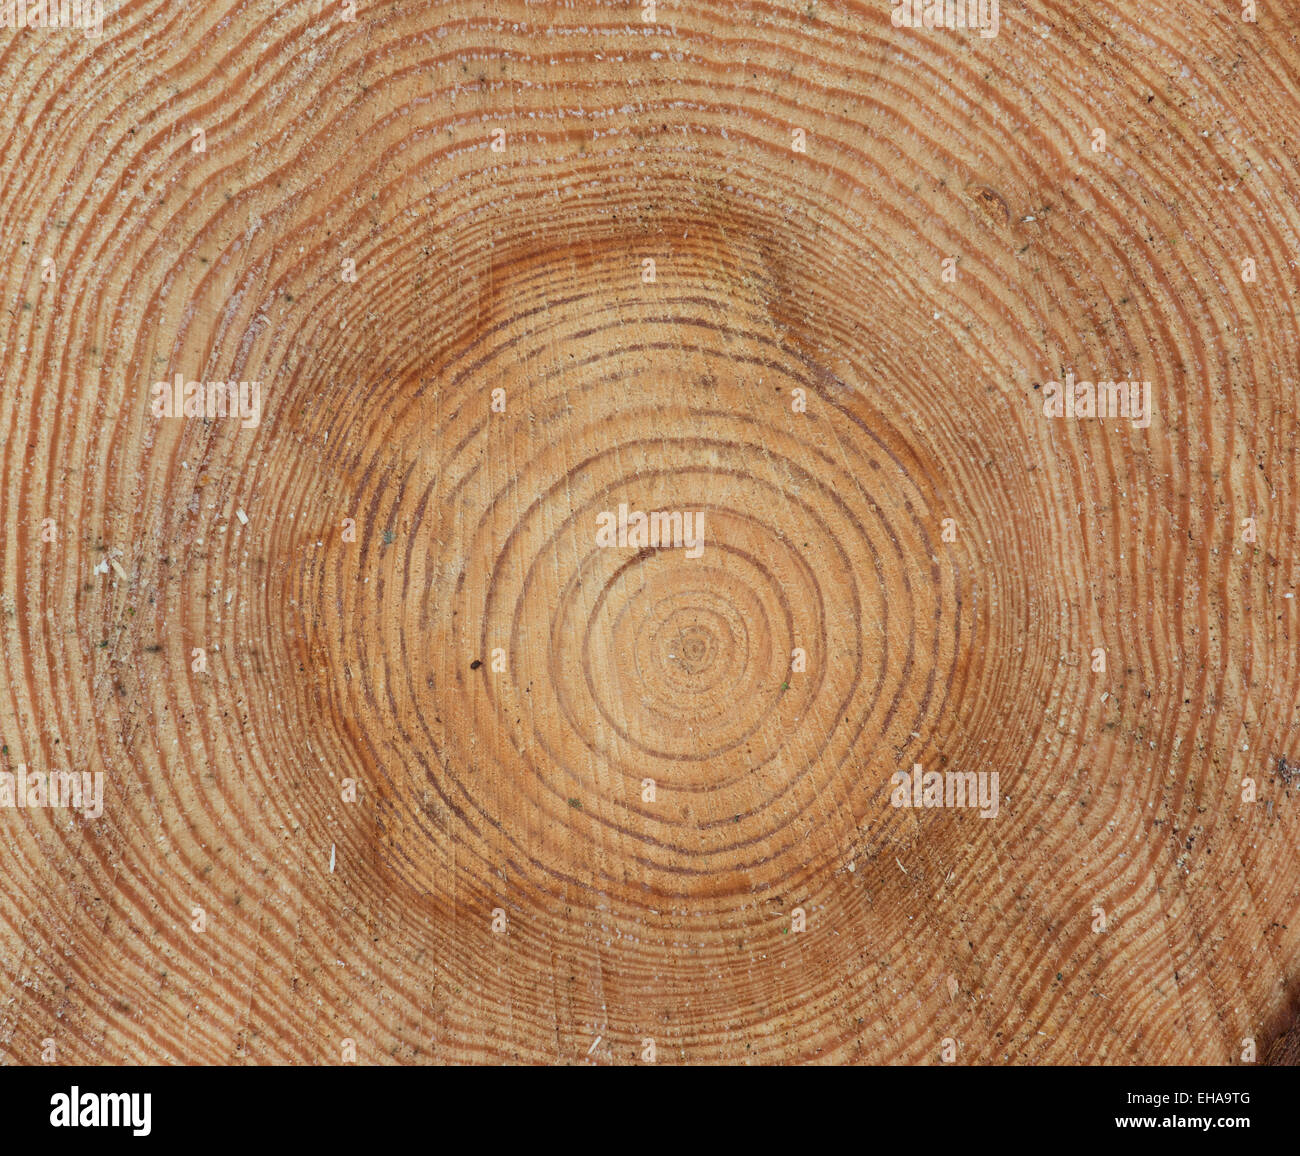 Les cernes des arbres de pin. Modèle de tronc d'arbre scié Banque D'Images